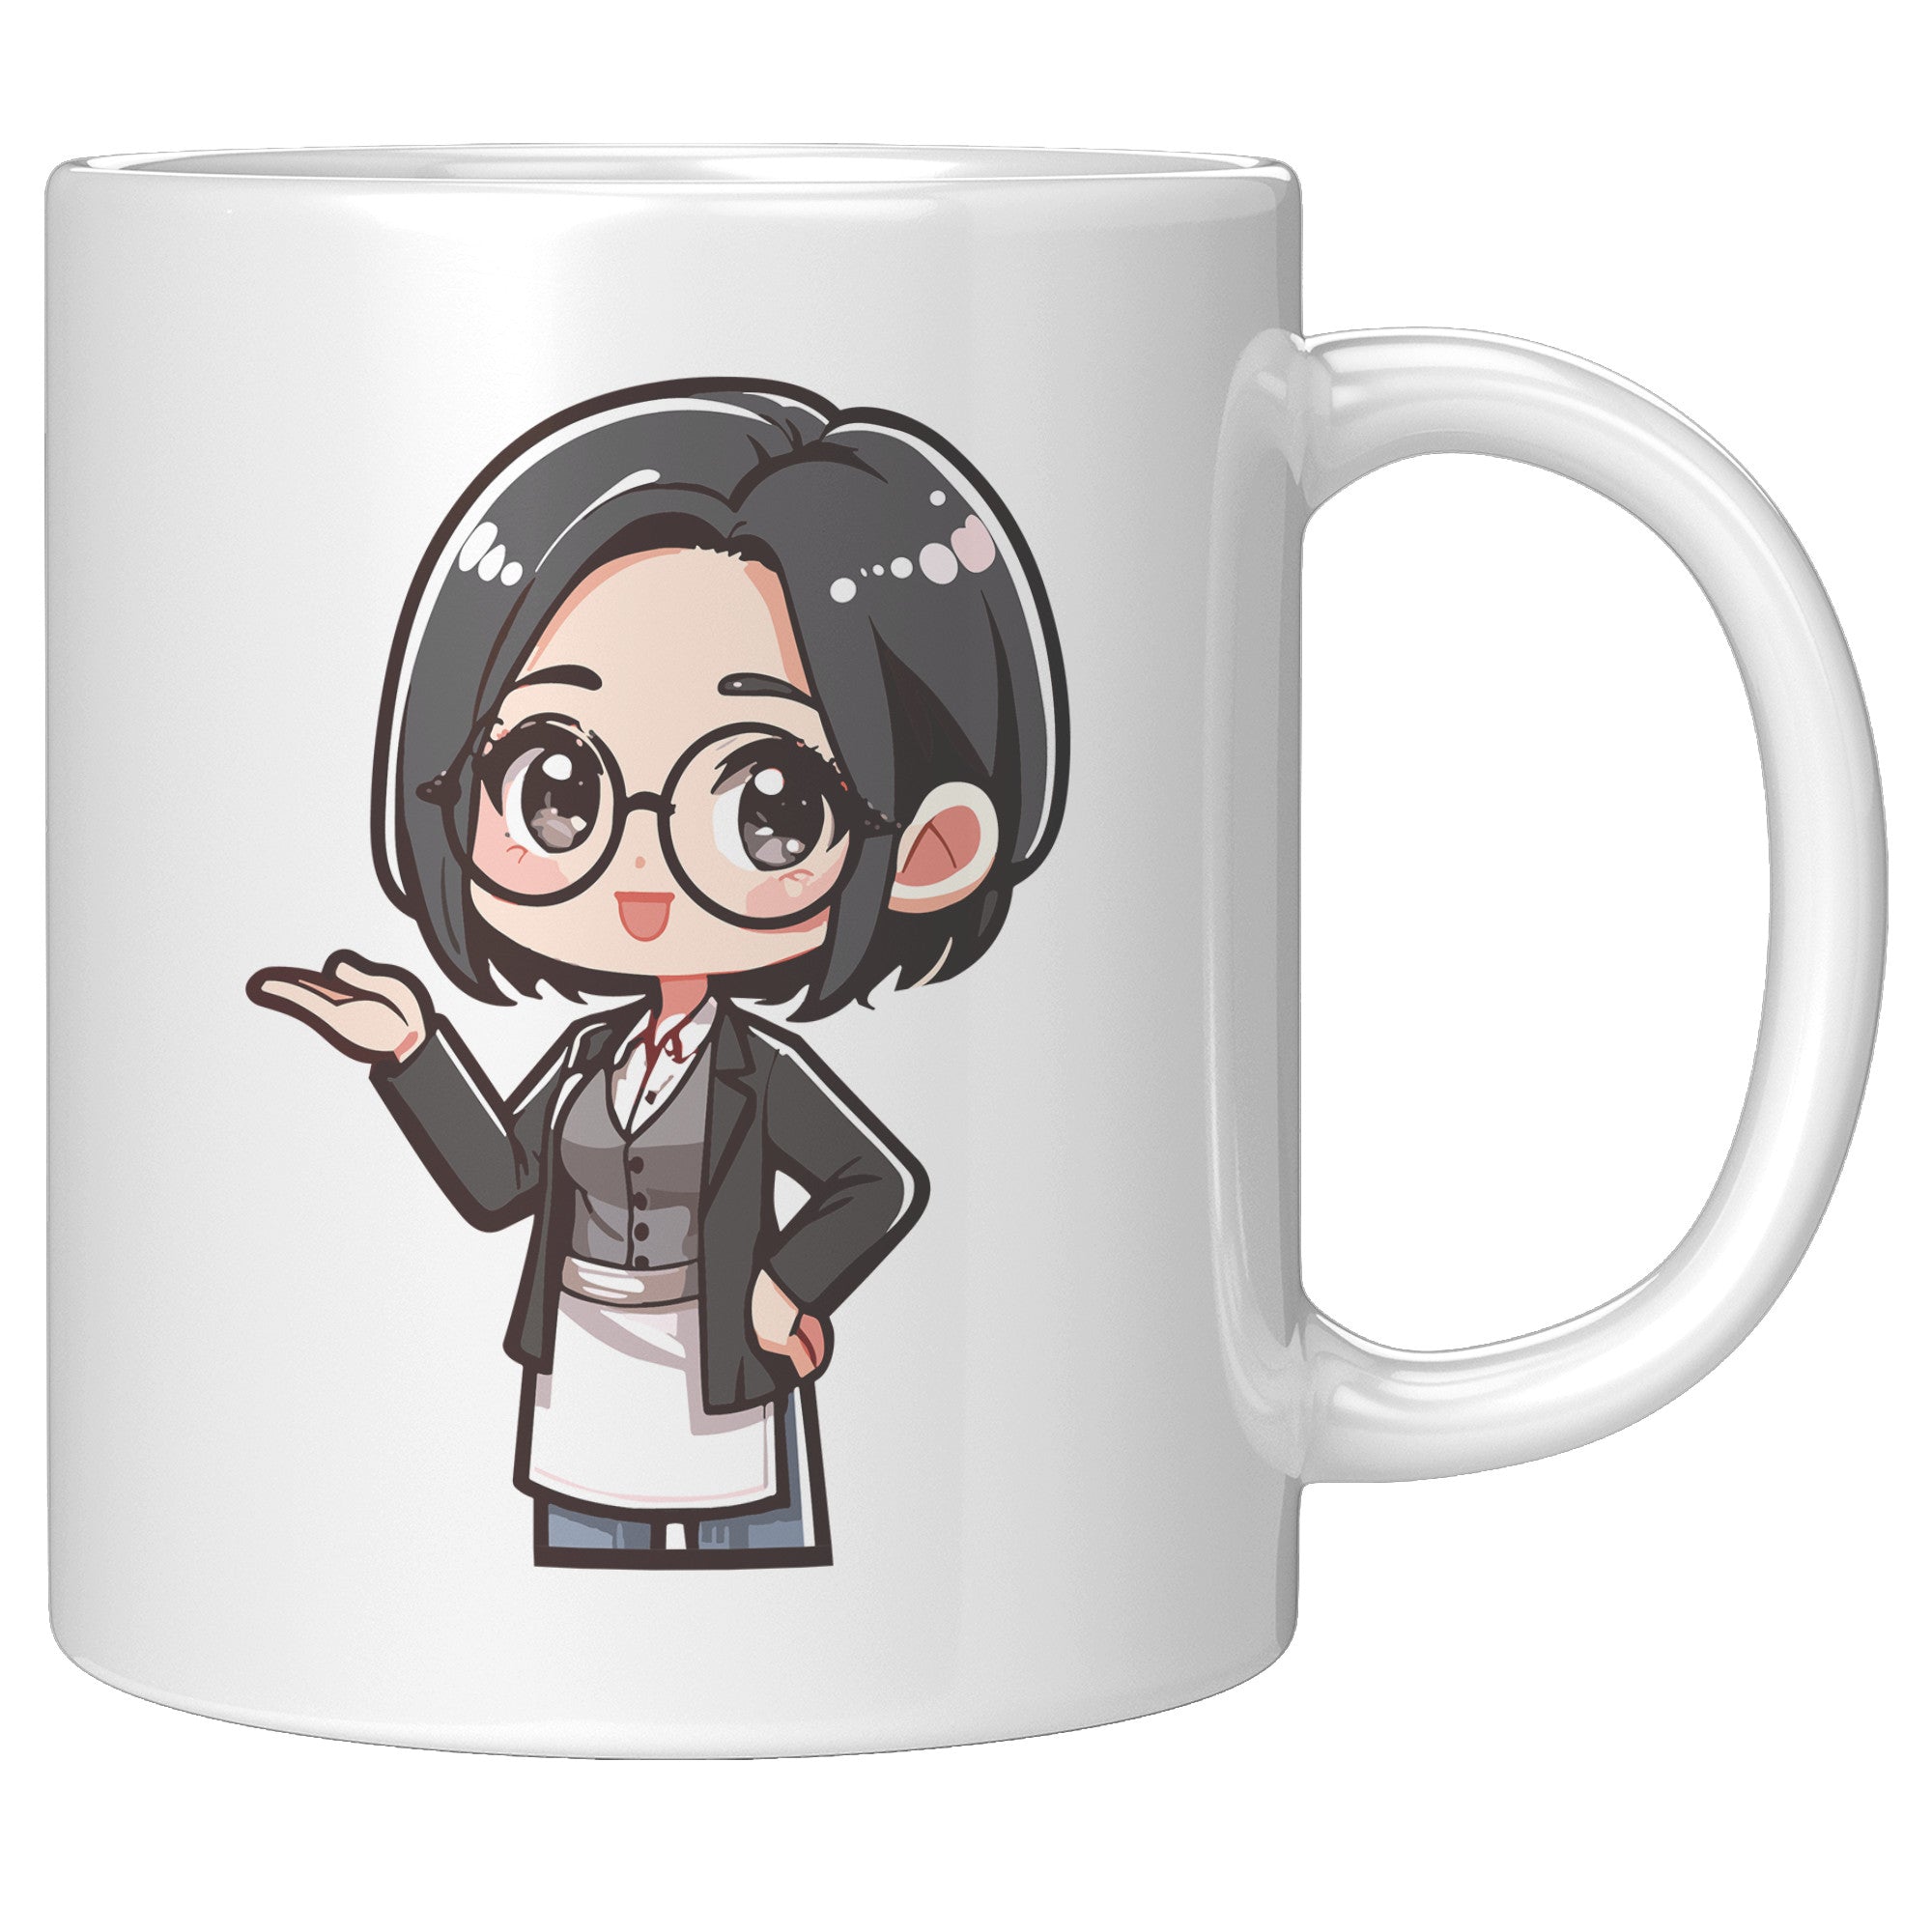 "Marites Gossip Queen Coffee Mug - Cute Cartoon 'Ano Ang Latest?' Cup - Perfect Chismosa Gift - Filipino Slang Tea Mug" - H